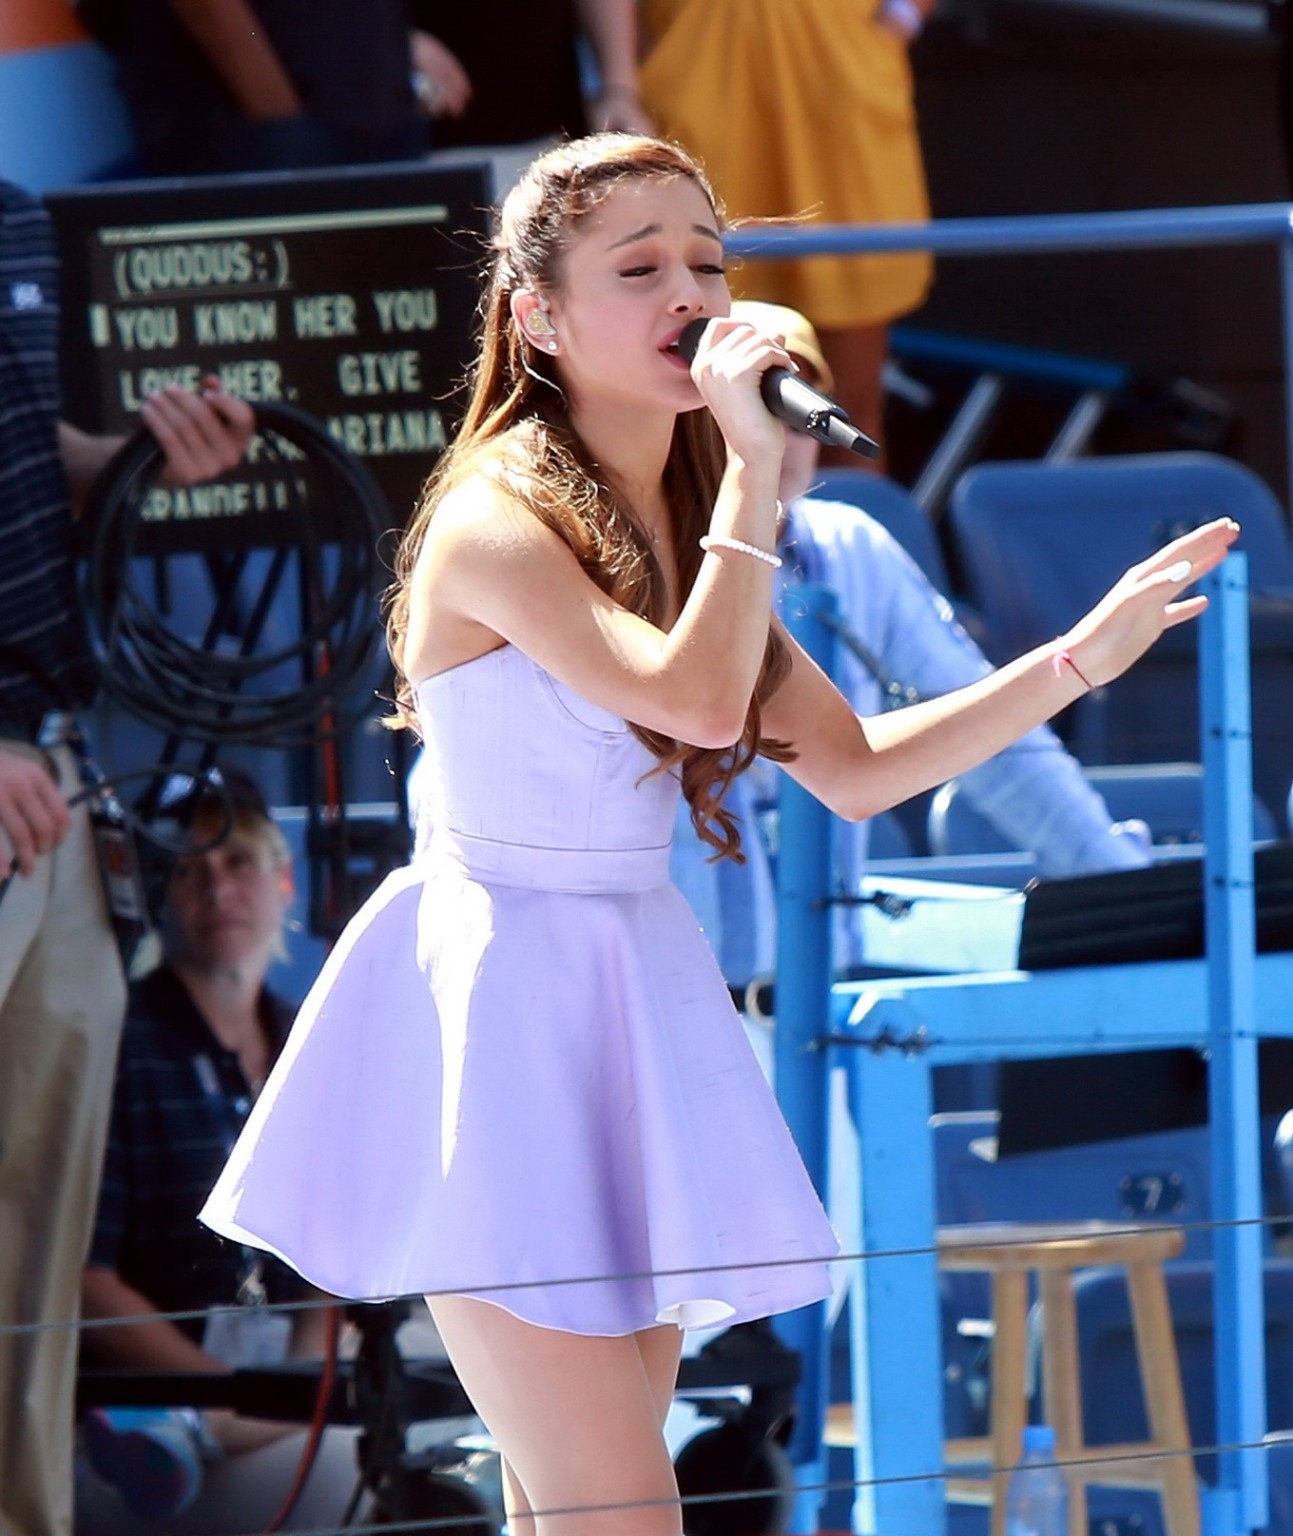 Ariana grande leggy eseguendo all'evento in nyc
 #75221003